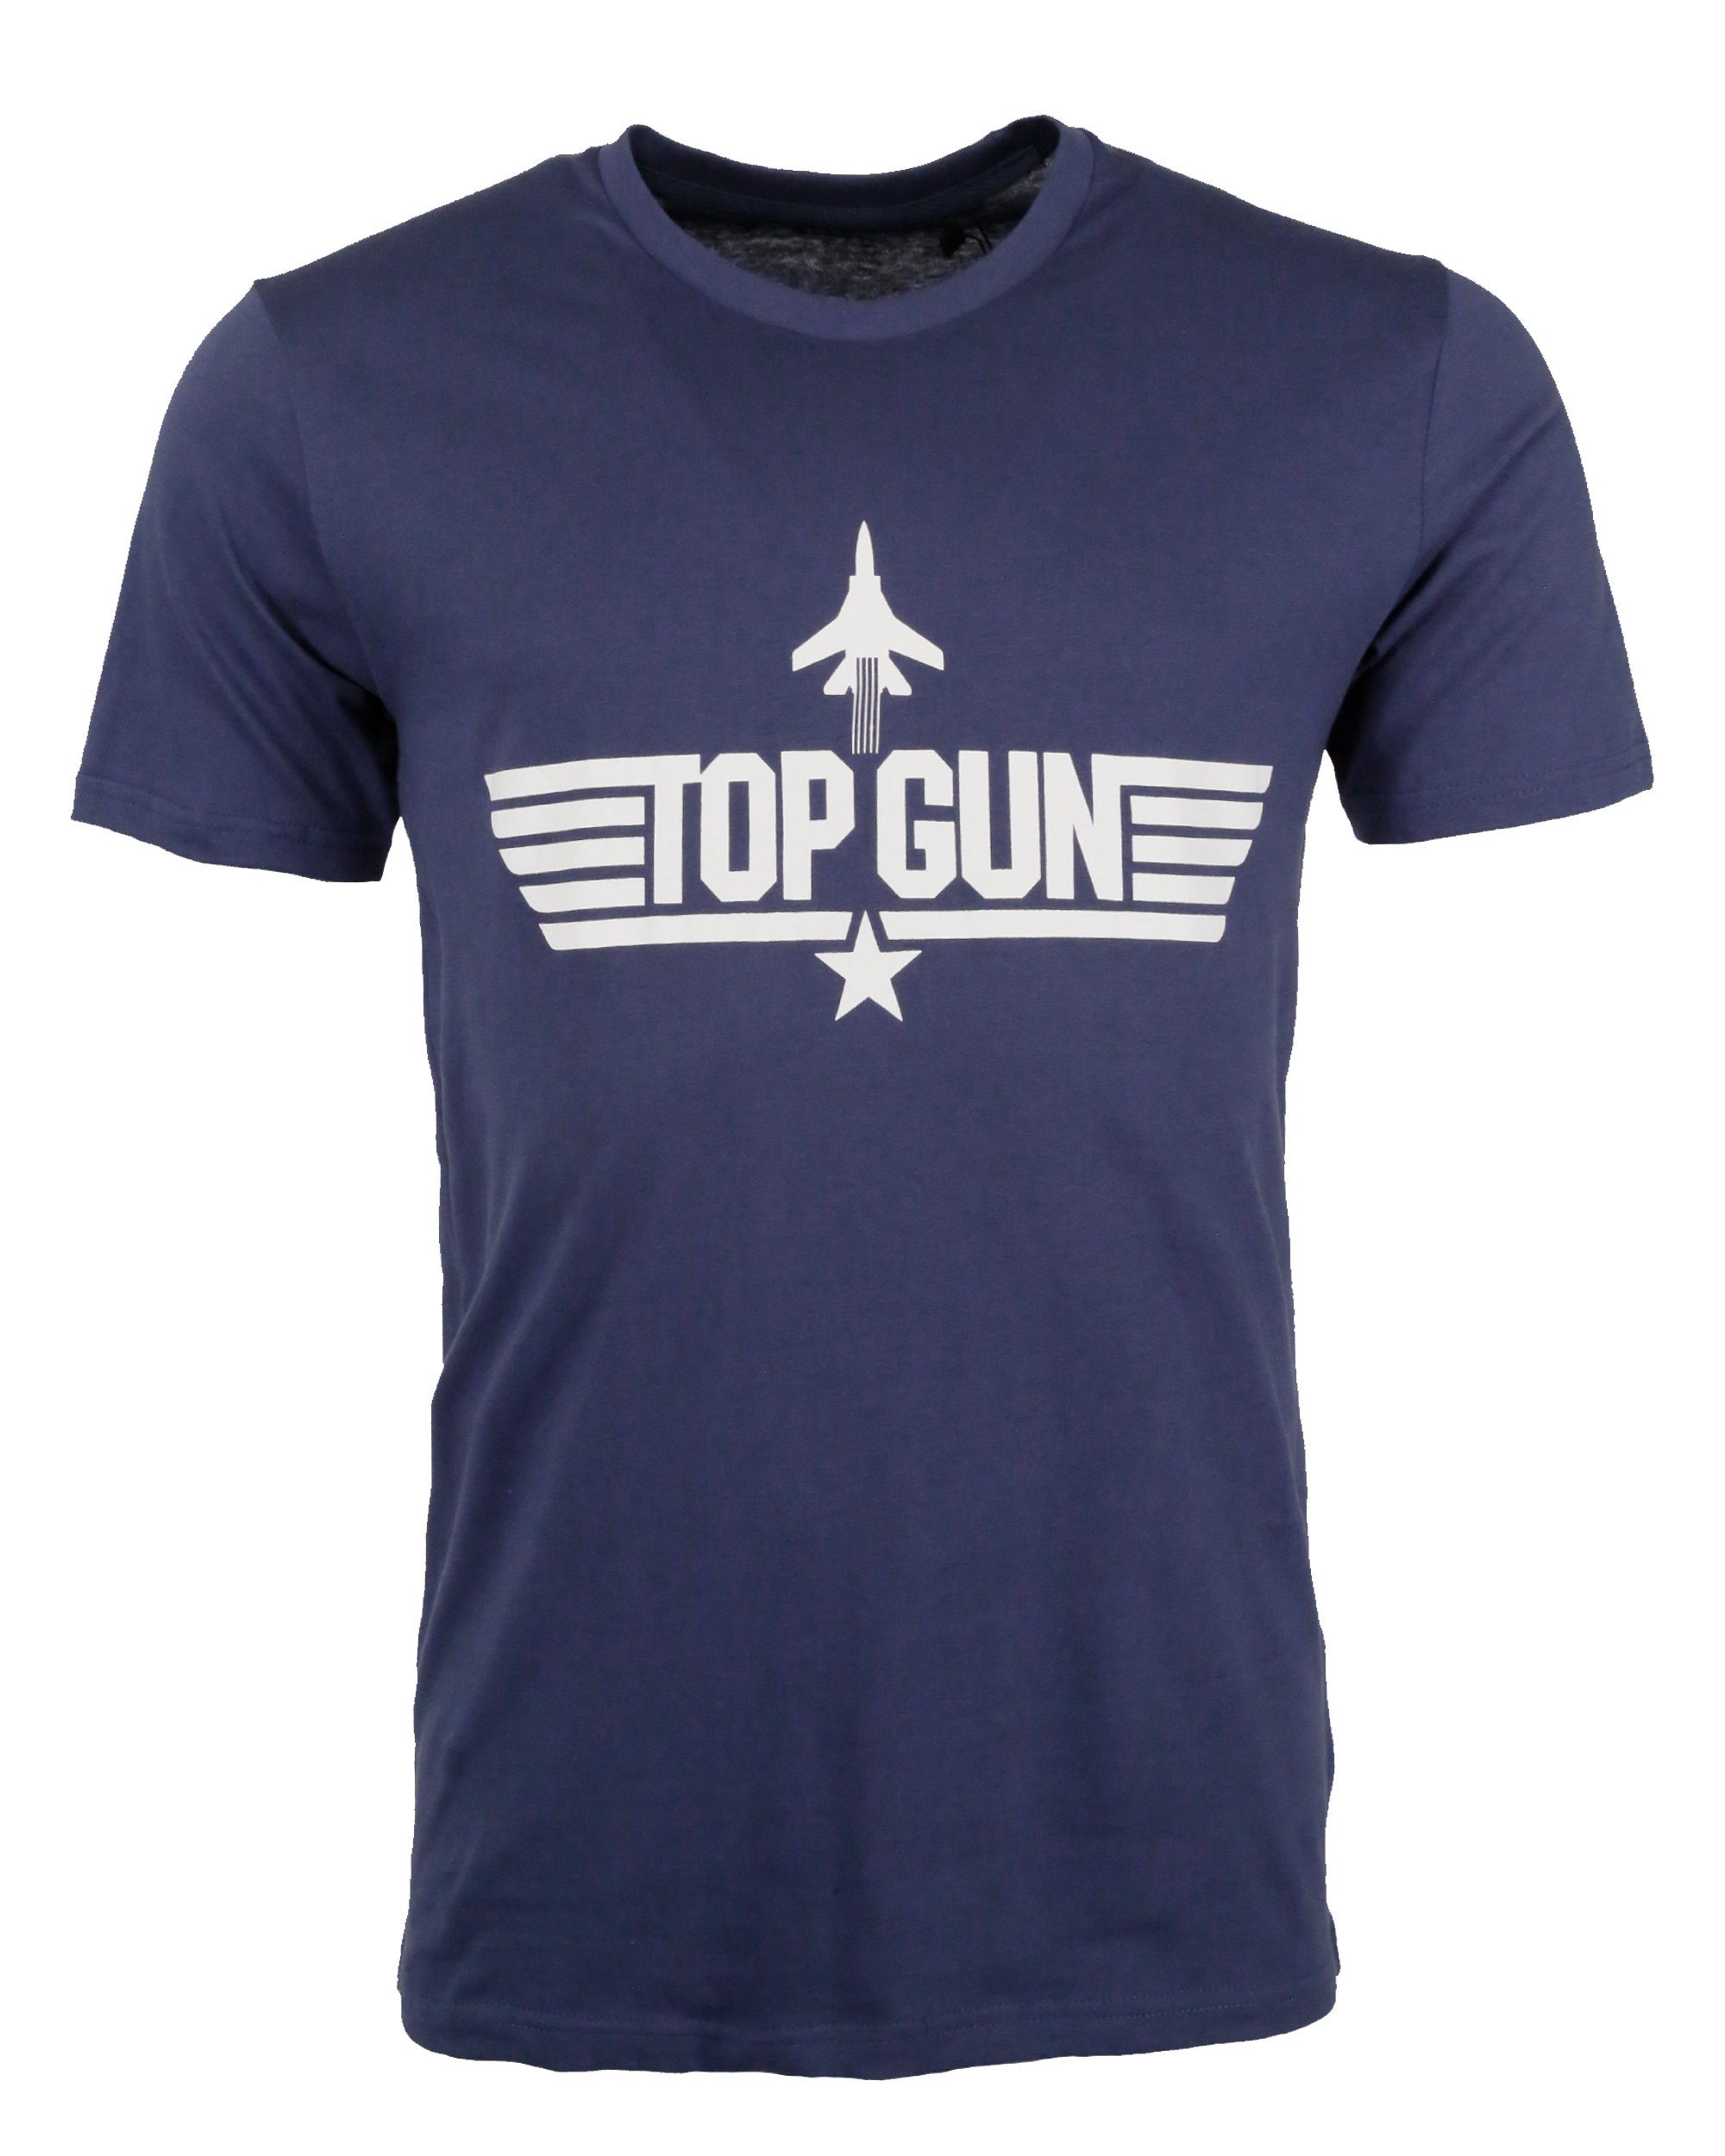 PP201011 T-Shirt TOP GUN navy